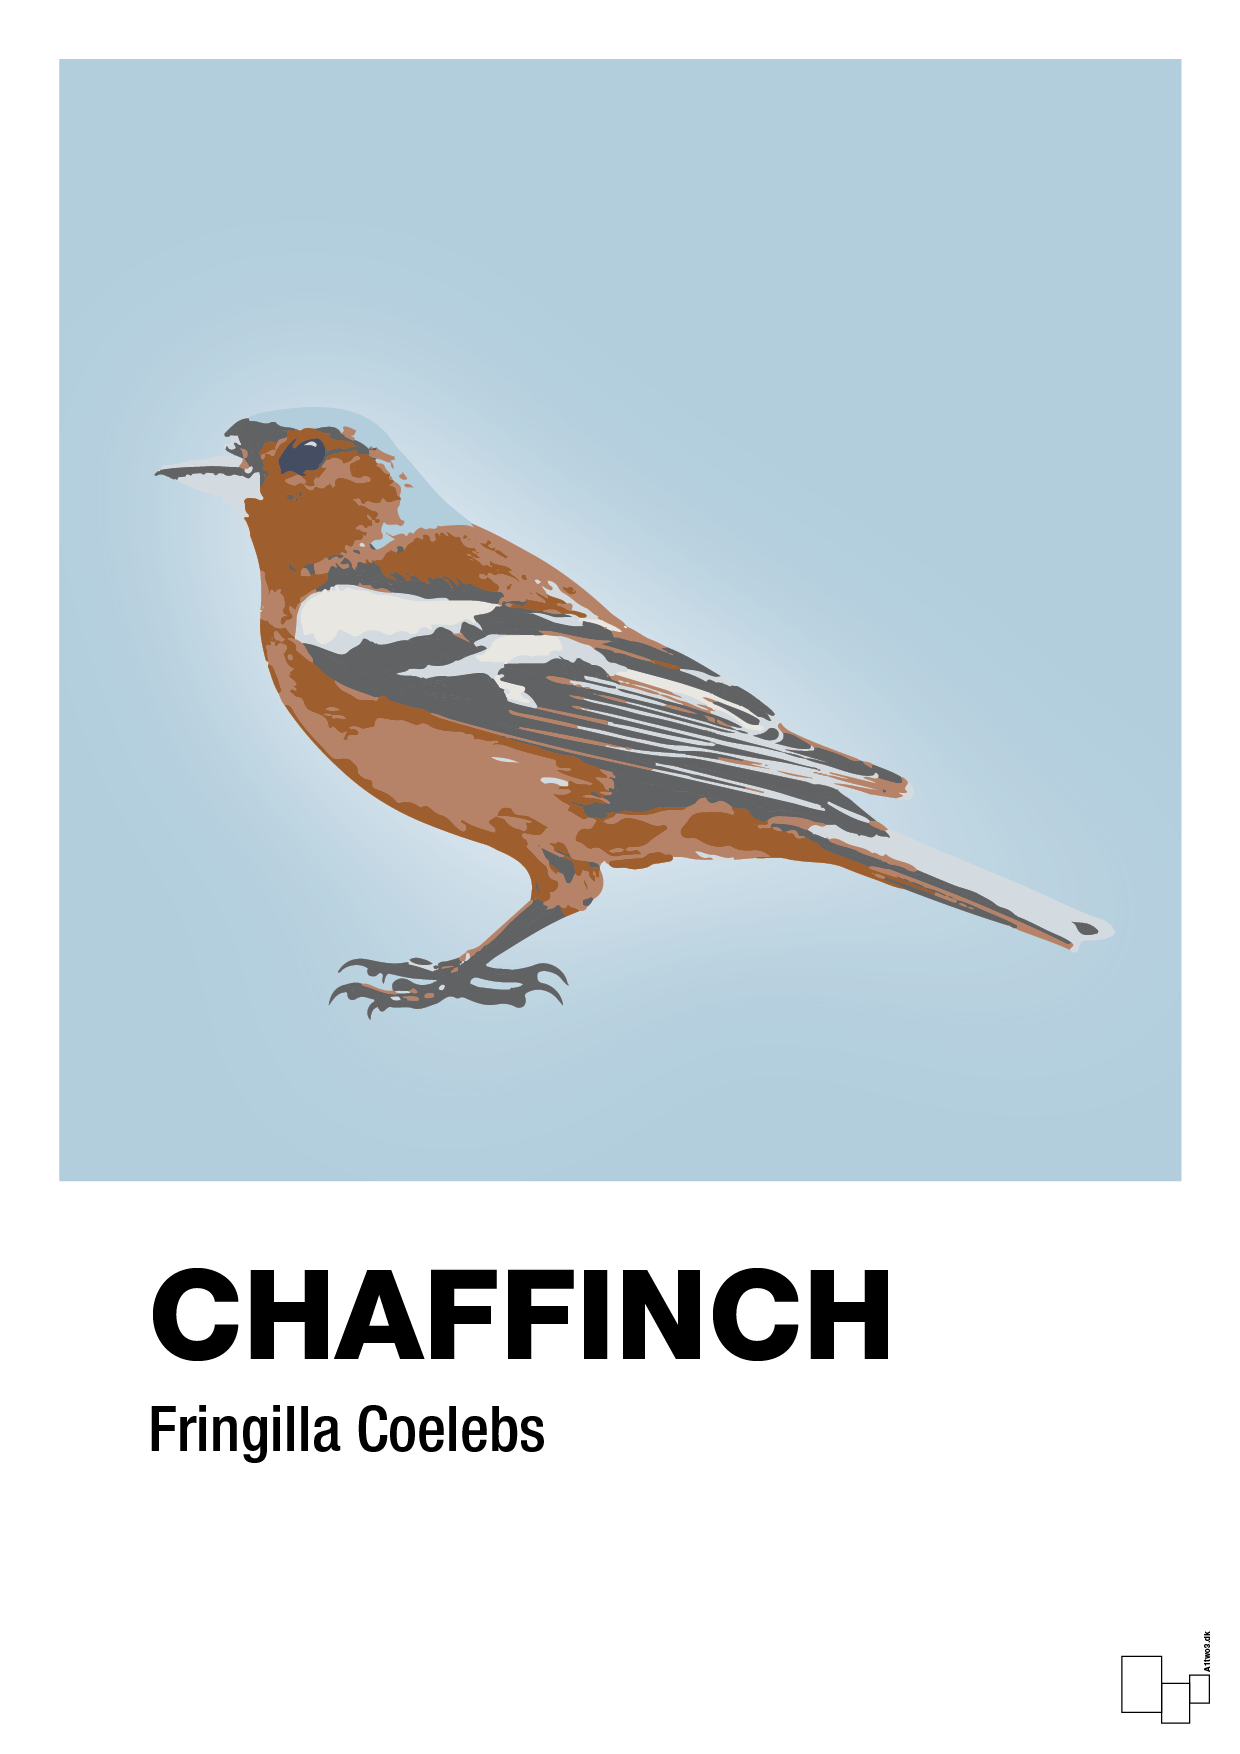 chaffinch - Plakat med Videnskab i Heavenly Blue